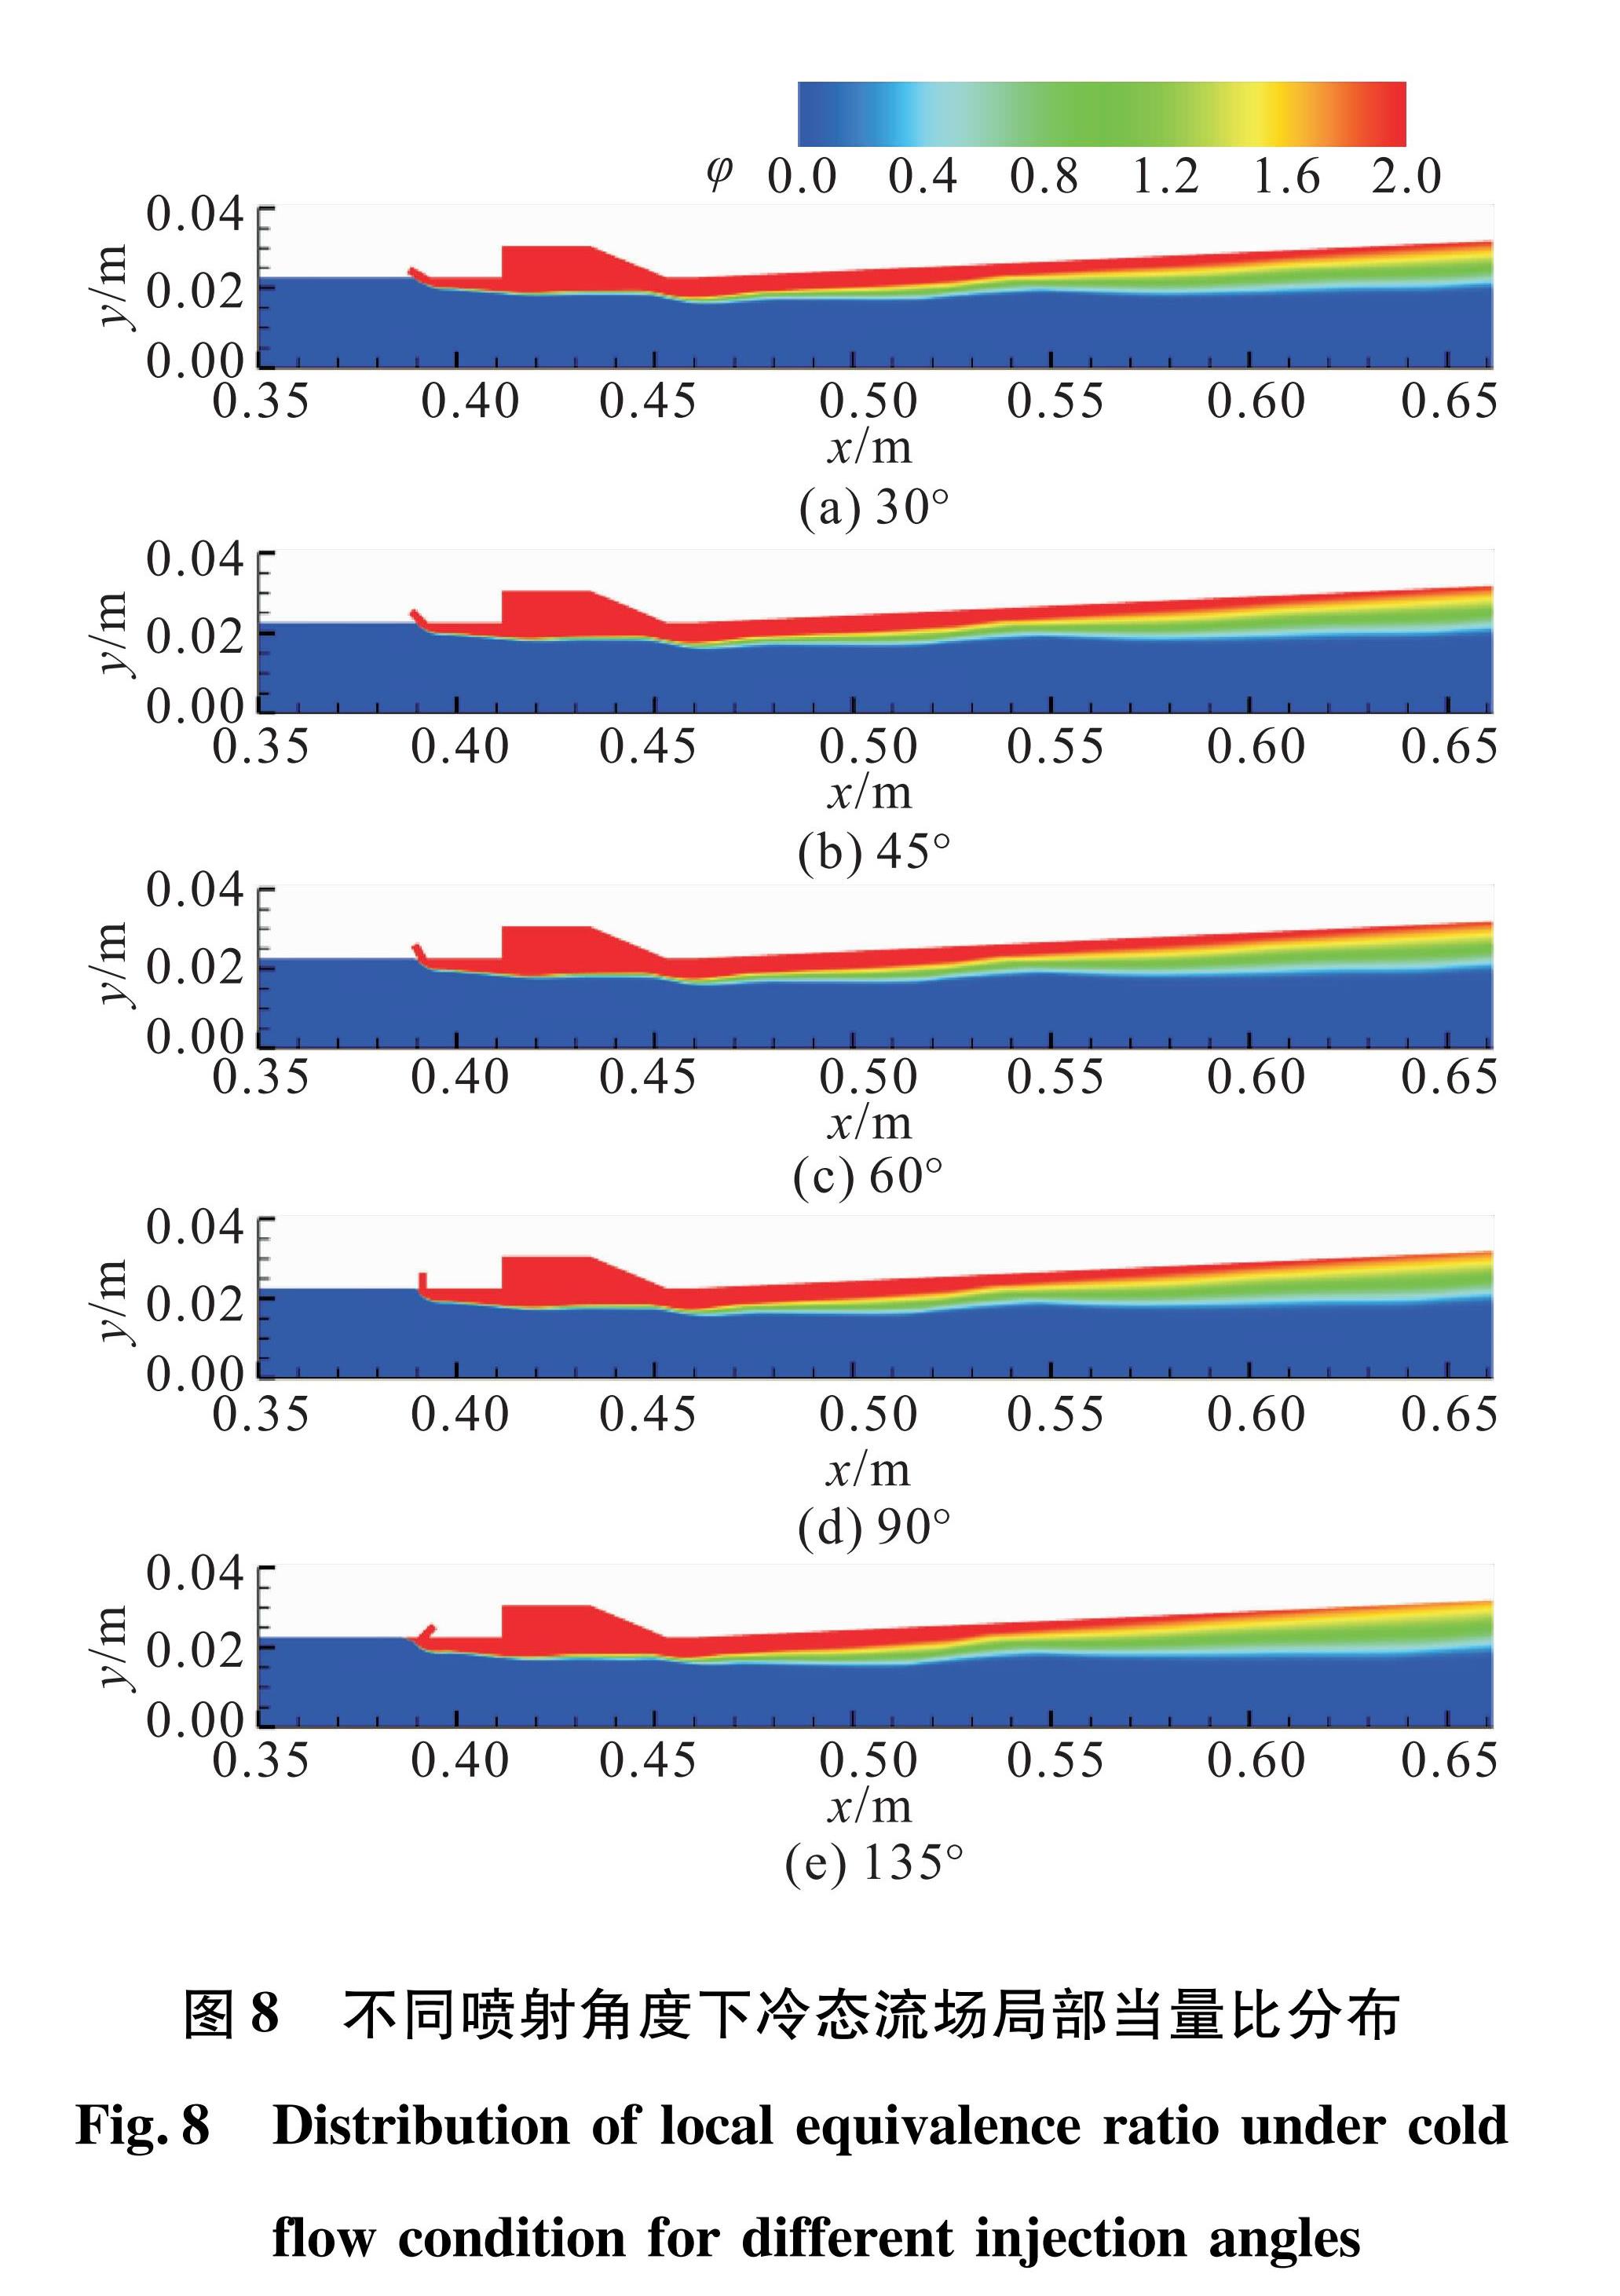 图8 不同喷射角度下冷态流场局部当量比分布<br/>Fig.8 Distribution of local equivalence ratio under cold flow condition for different injection angles 